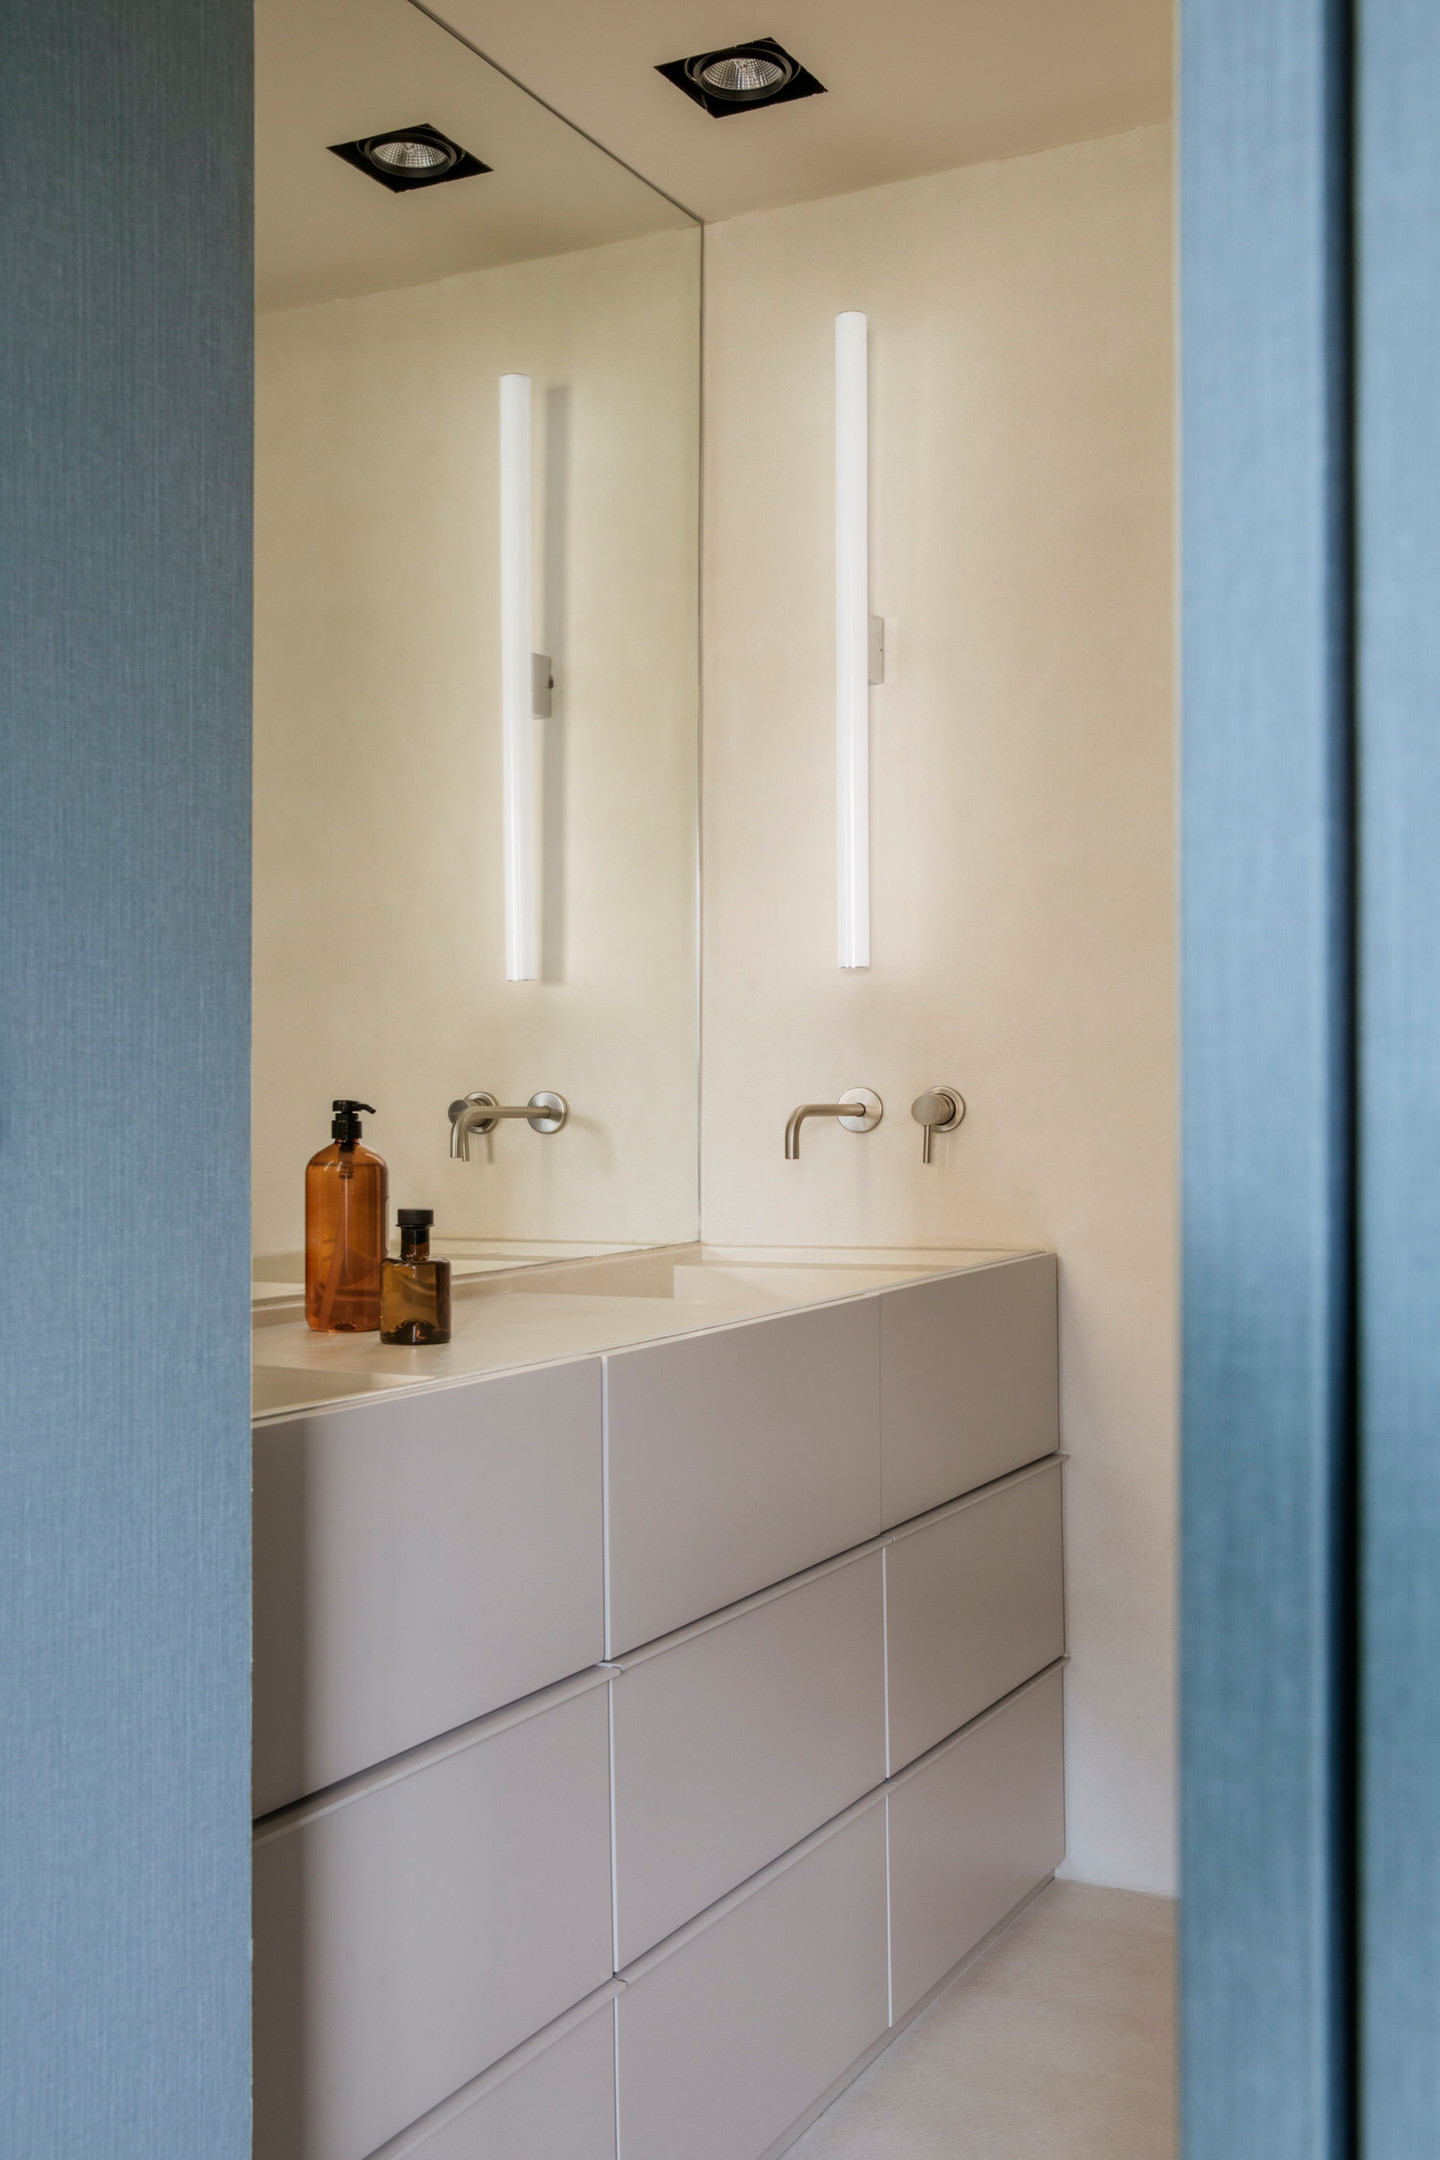 Căn hộ gồm 2 phòng tắm, 1 phòng tắm chính và 1 phòng cho khách đến thăm nhà. Phòng tắm đầu tiên với hệ thống đèn ốp trần và đèn gắn tường bố trí cạnh tấm gương ốp 'full' tường trên bồn rửa cho không gian tươi sáng và 'nhân đôi' so với thực tế.